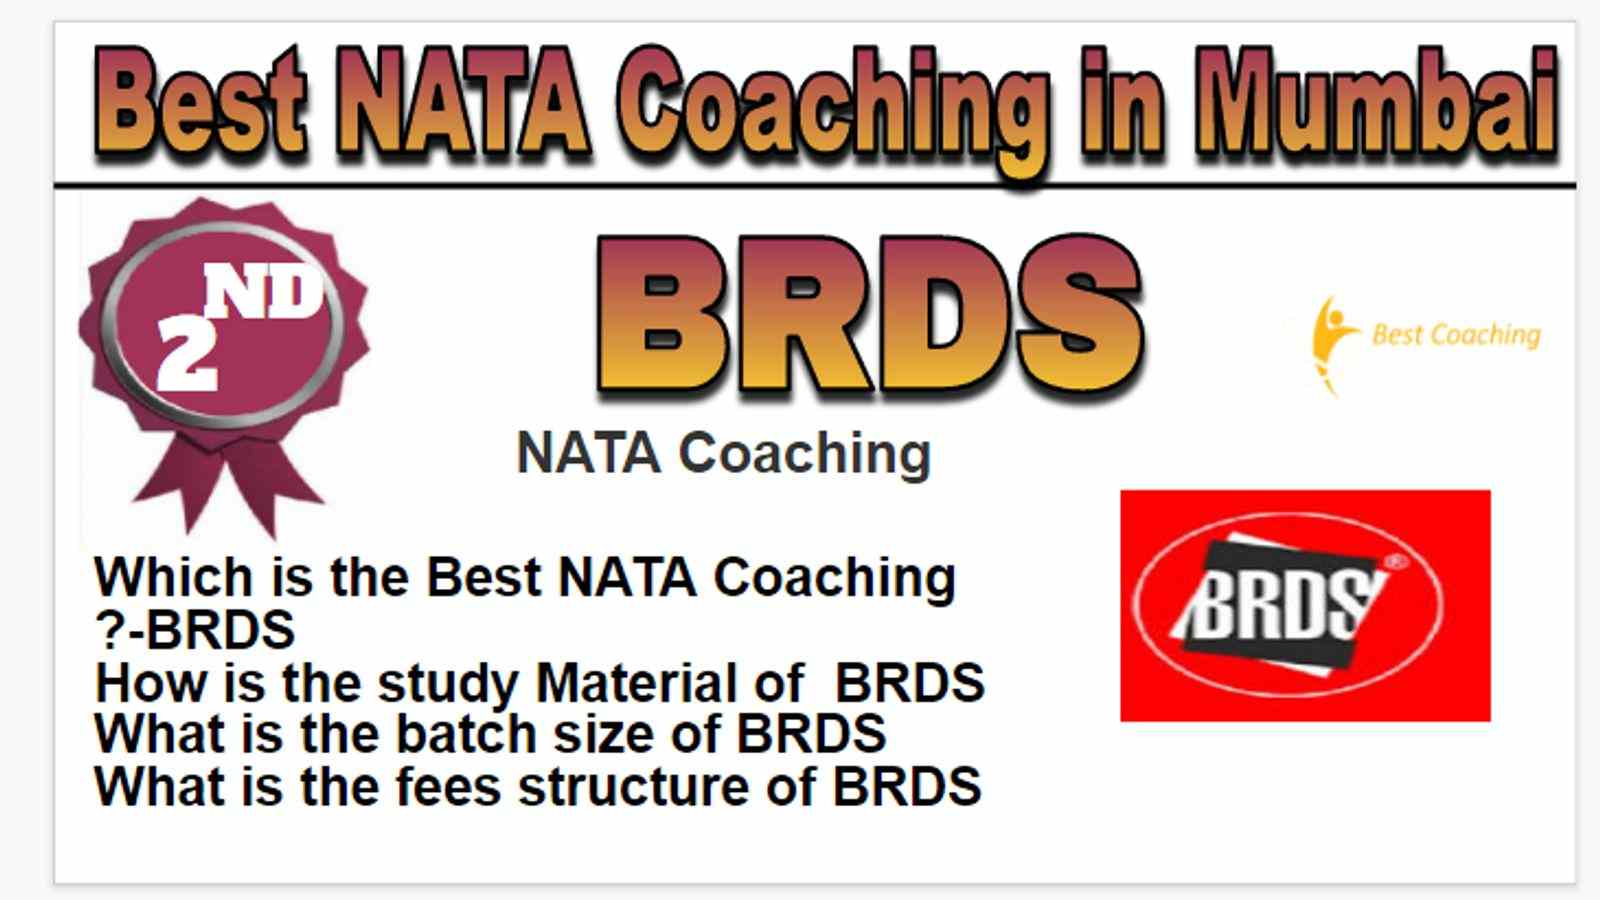 Rank 2 best NATA coaching in Mumbai